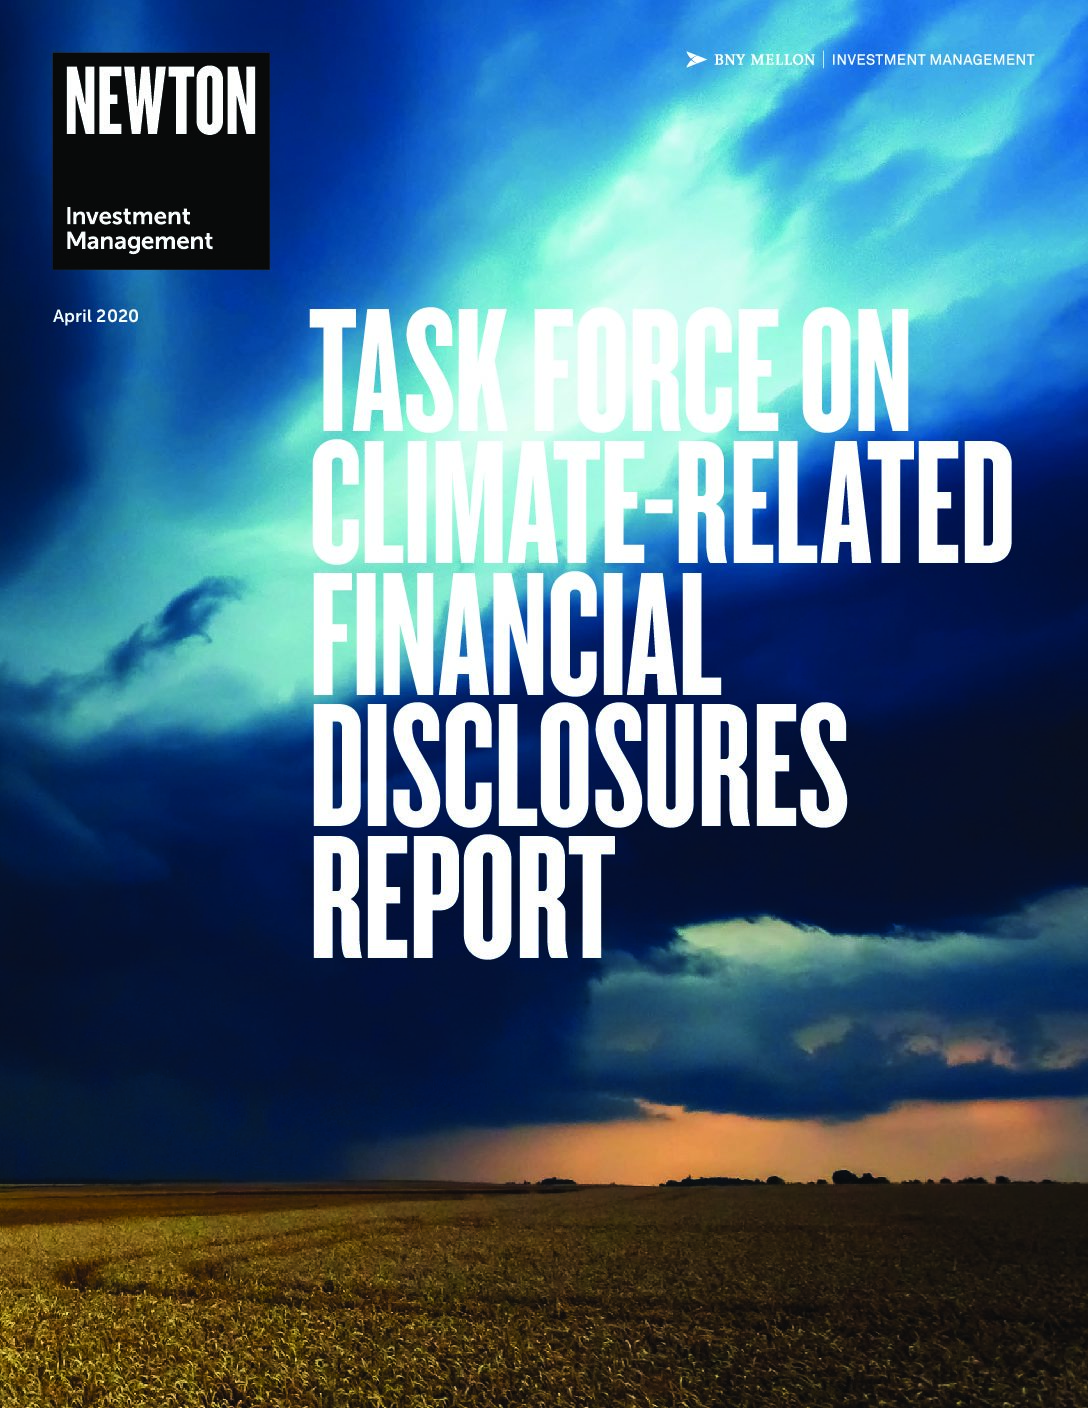 TCFD Disclosure Report